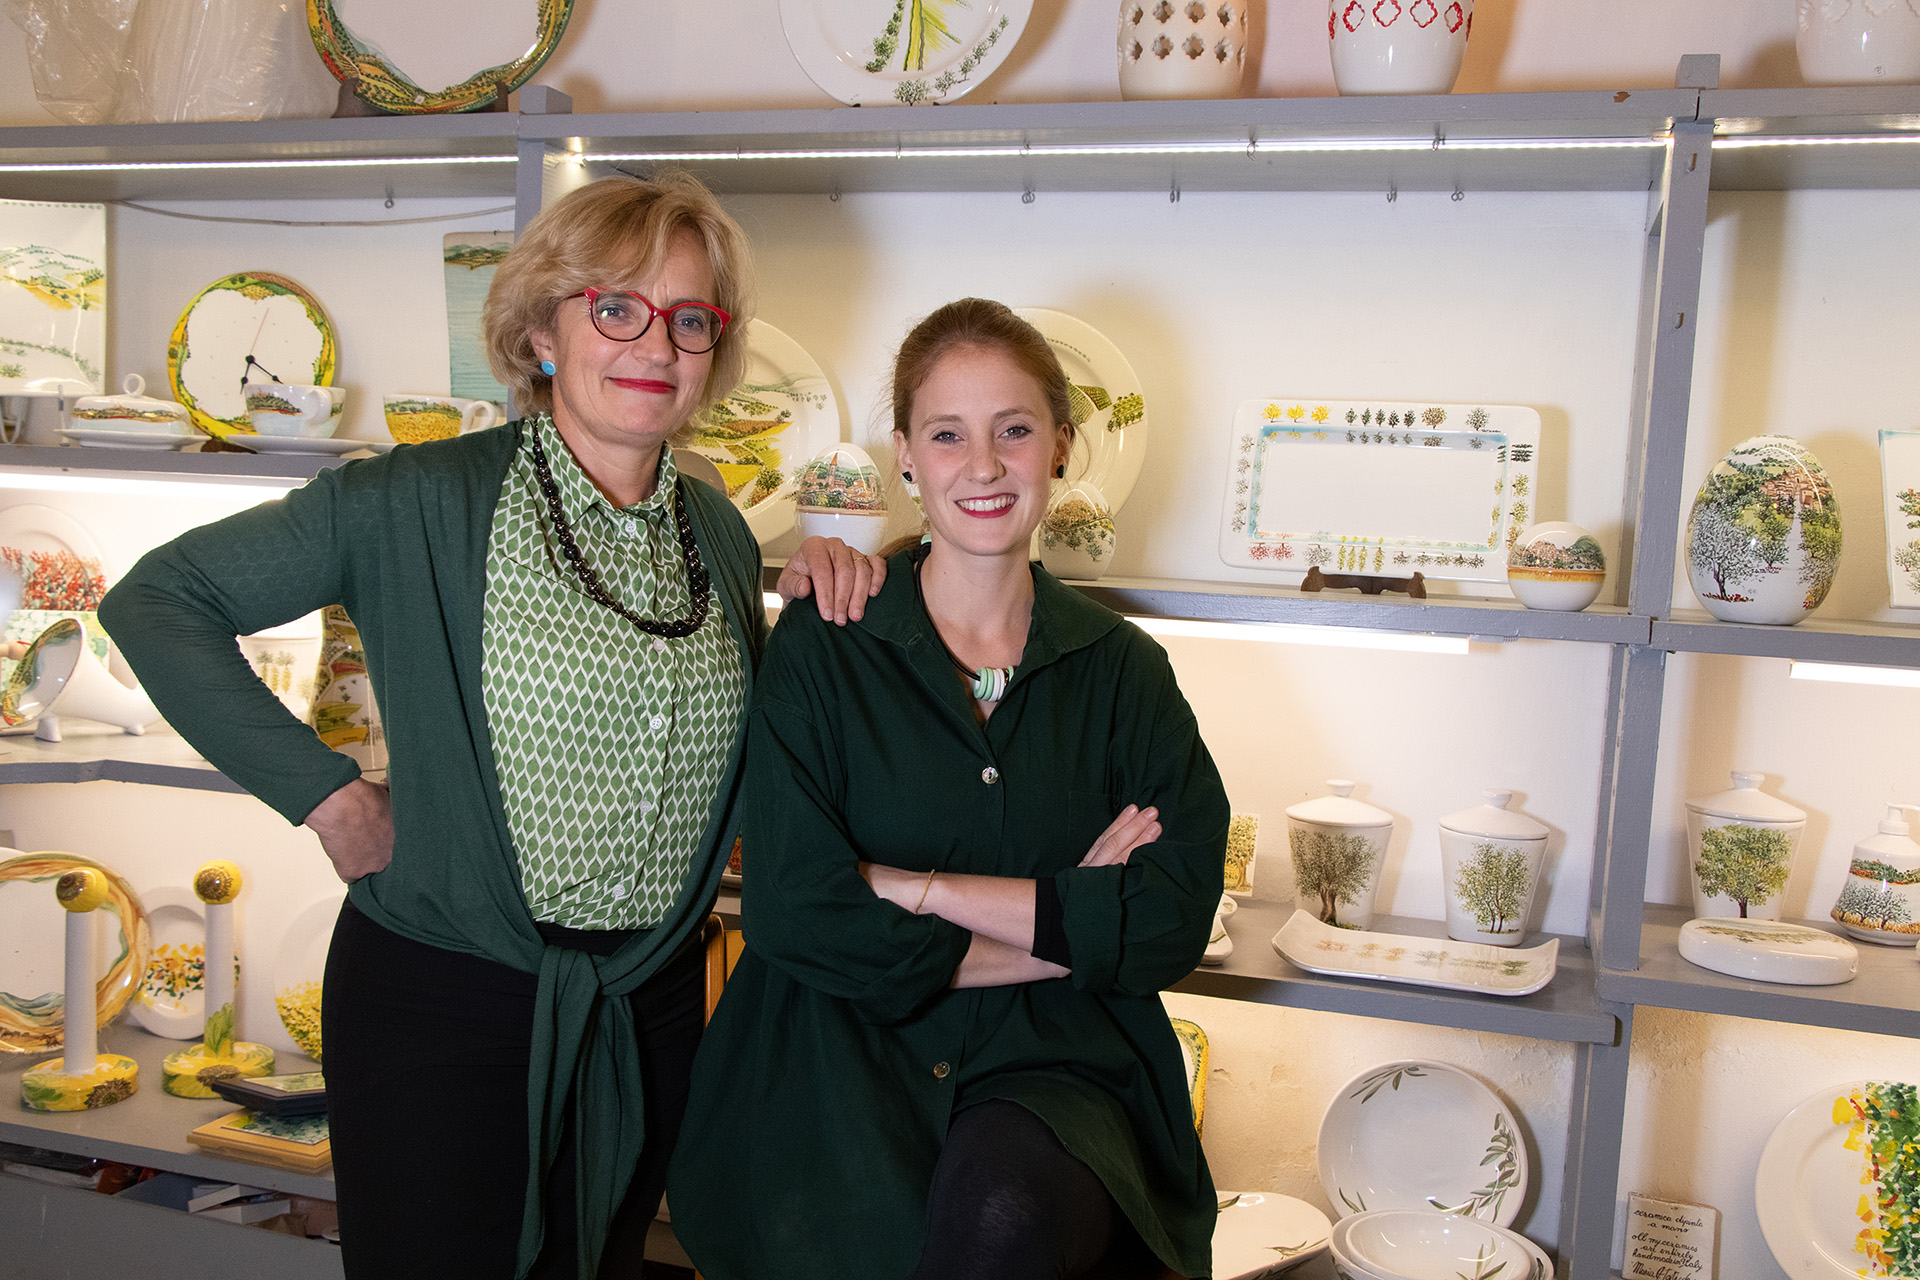 Ceramic artists Maria Antonietta Tattichi and Caterina Aquinardi in their shop in Perugia, Italy with their ceramics on display